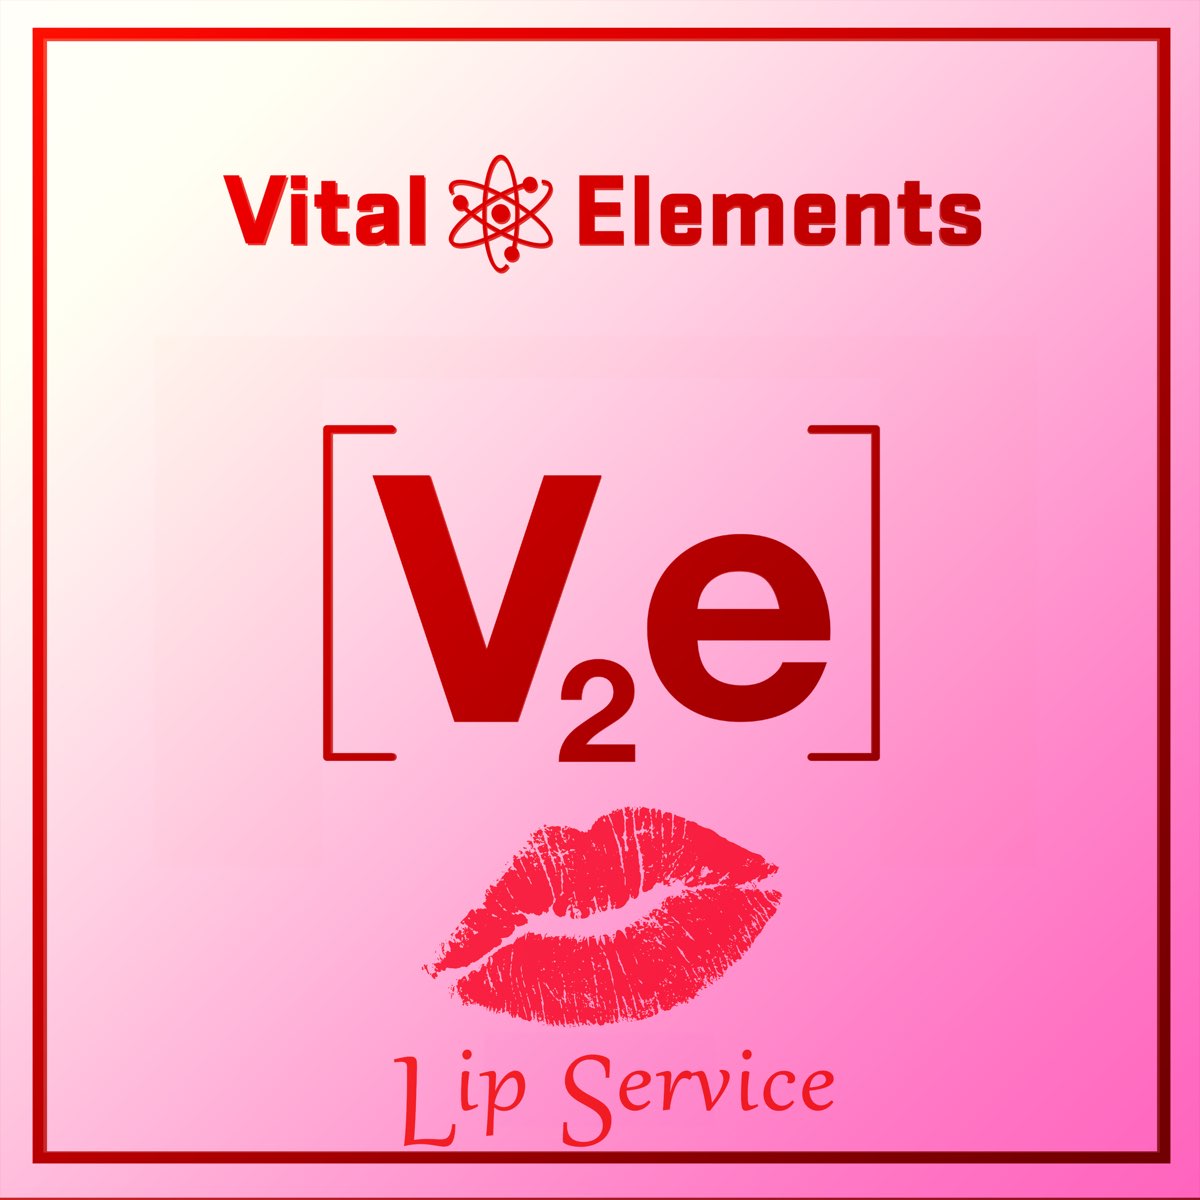 Vital elements. Single element photos. Песня elements